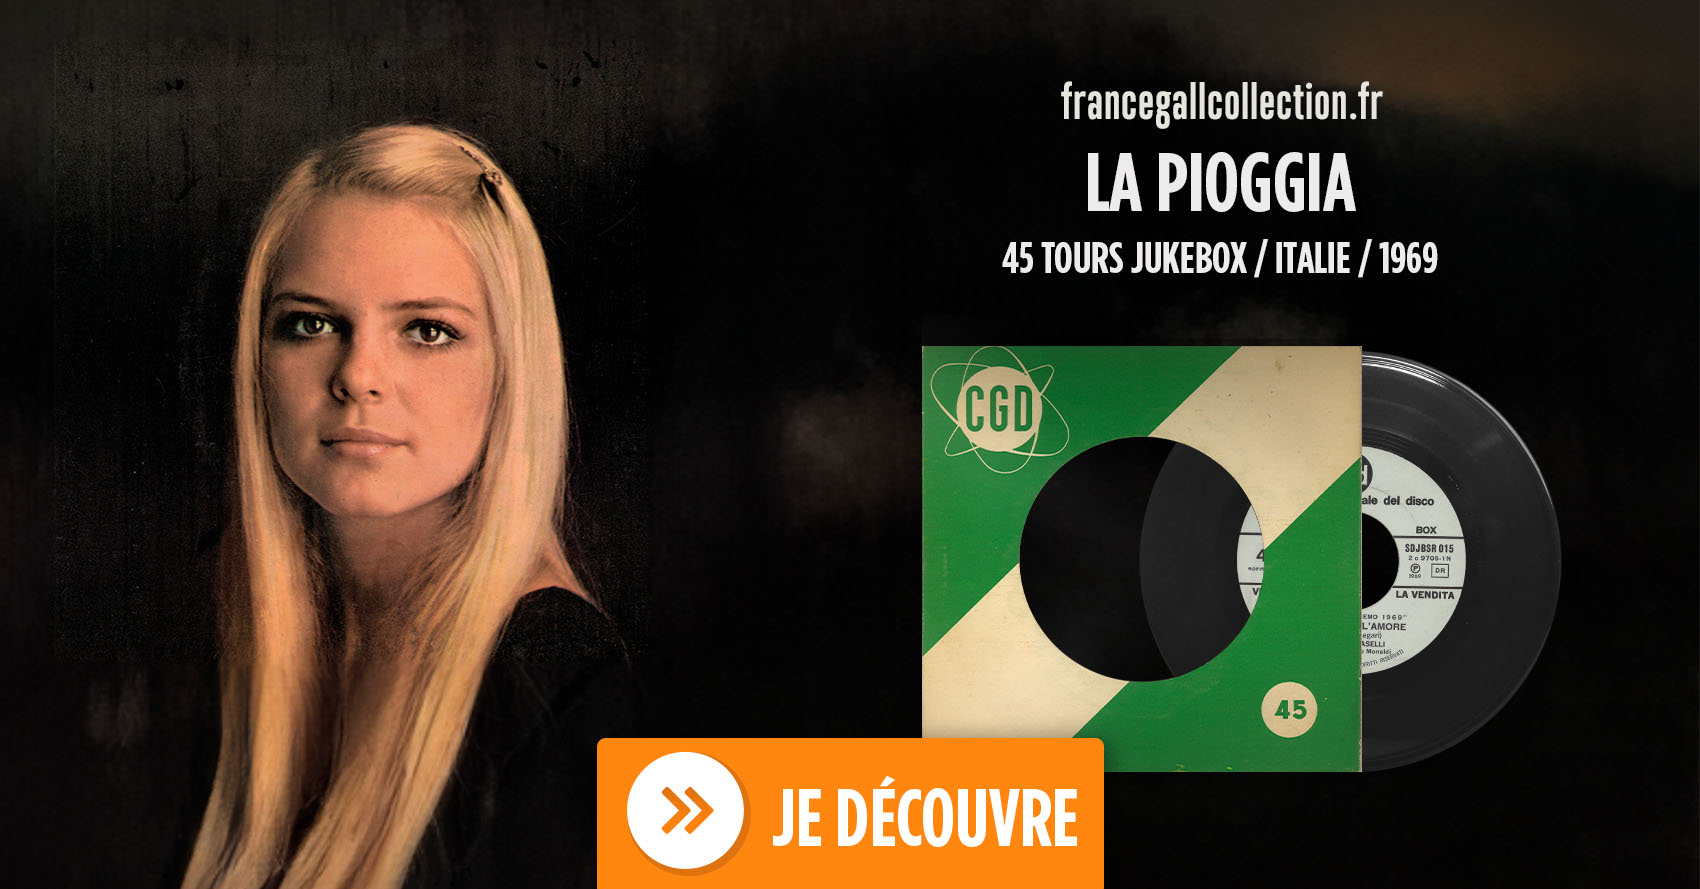 Cette édition au format 45 tours spécial jukebox est en provenance d'Italie et contient le titre La pioggia et sur la face B un titre de la chanteuse Caterina Caseli "Il gioco dell'amore".